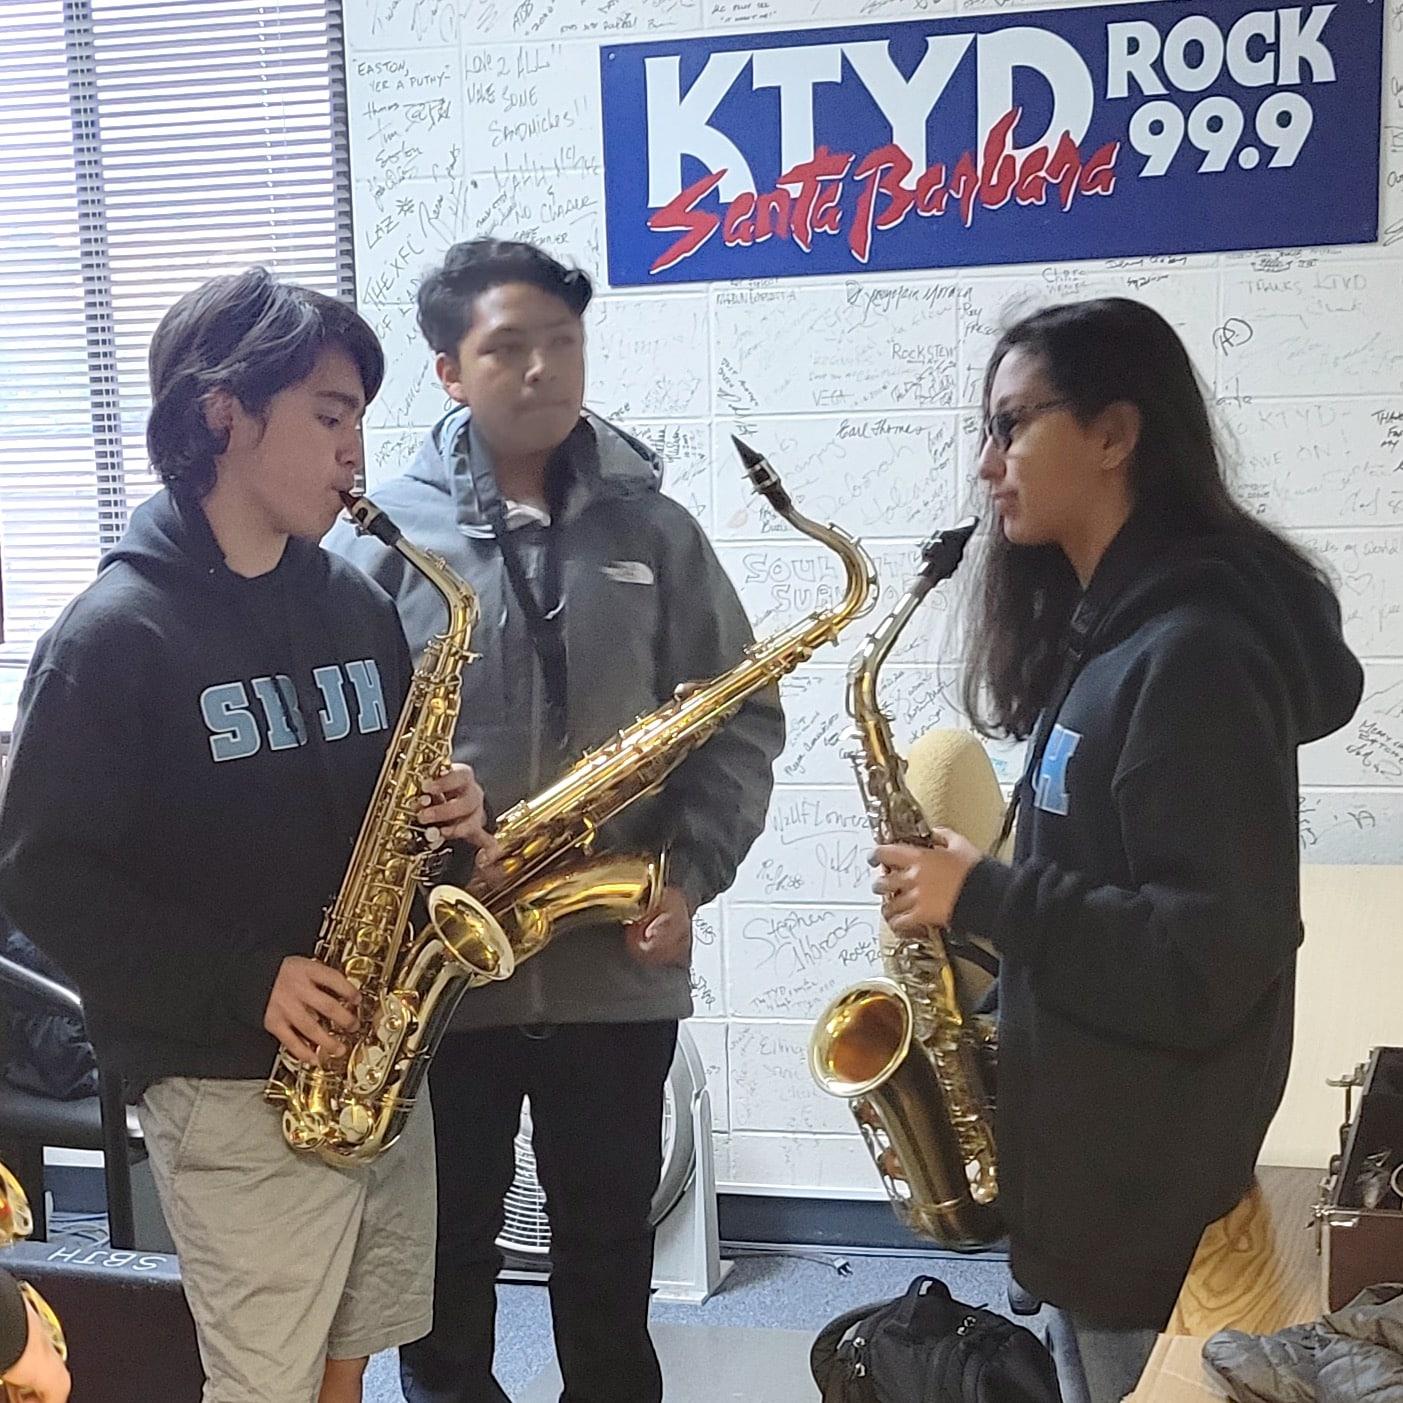 Santa Barbara Education Foundation y 99.9 KTYD trabajan para ampliar el apoyo de la comunidad a la educación musical